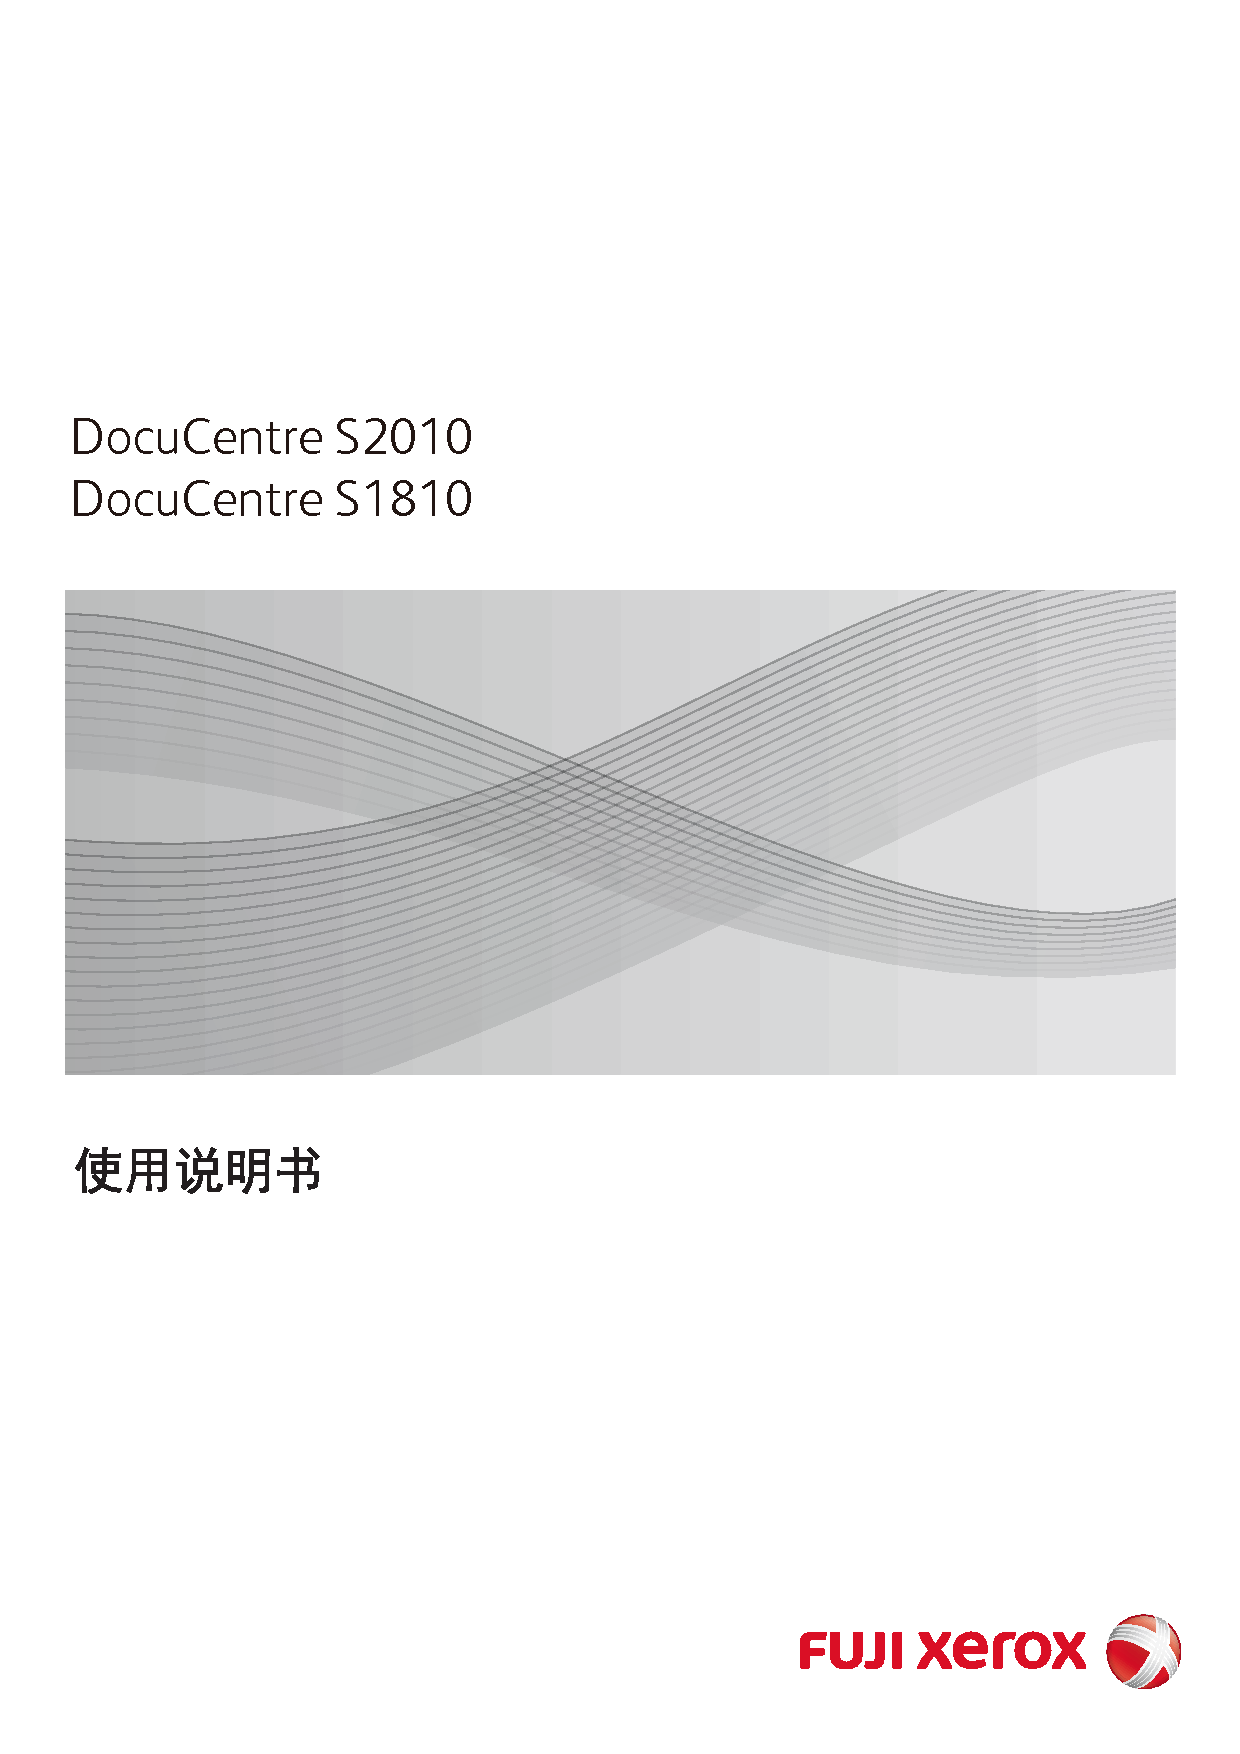 富士施乐 Fuji Xerox DocuCentre S1810 使用说明书 封面